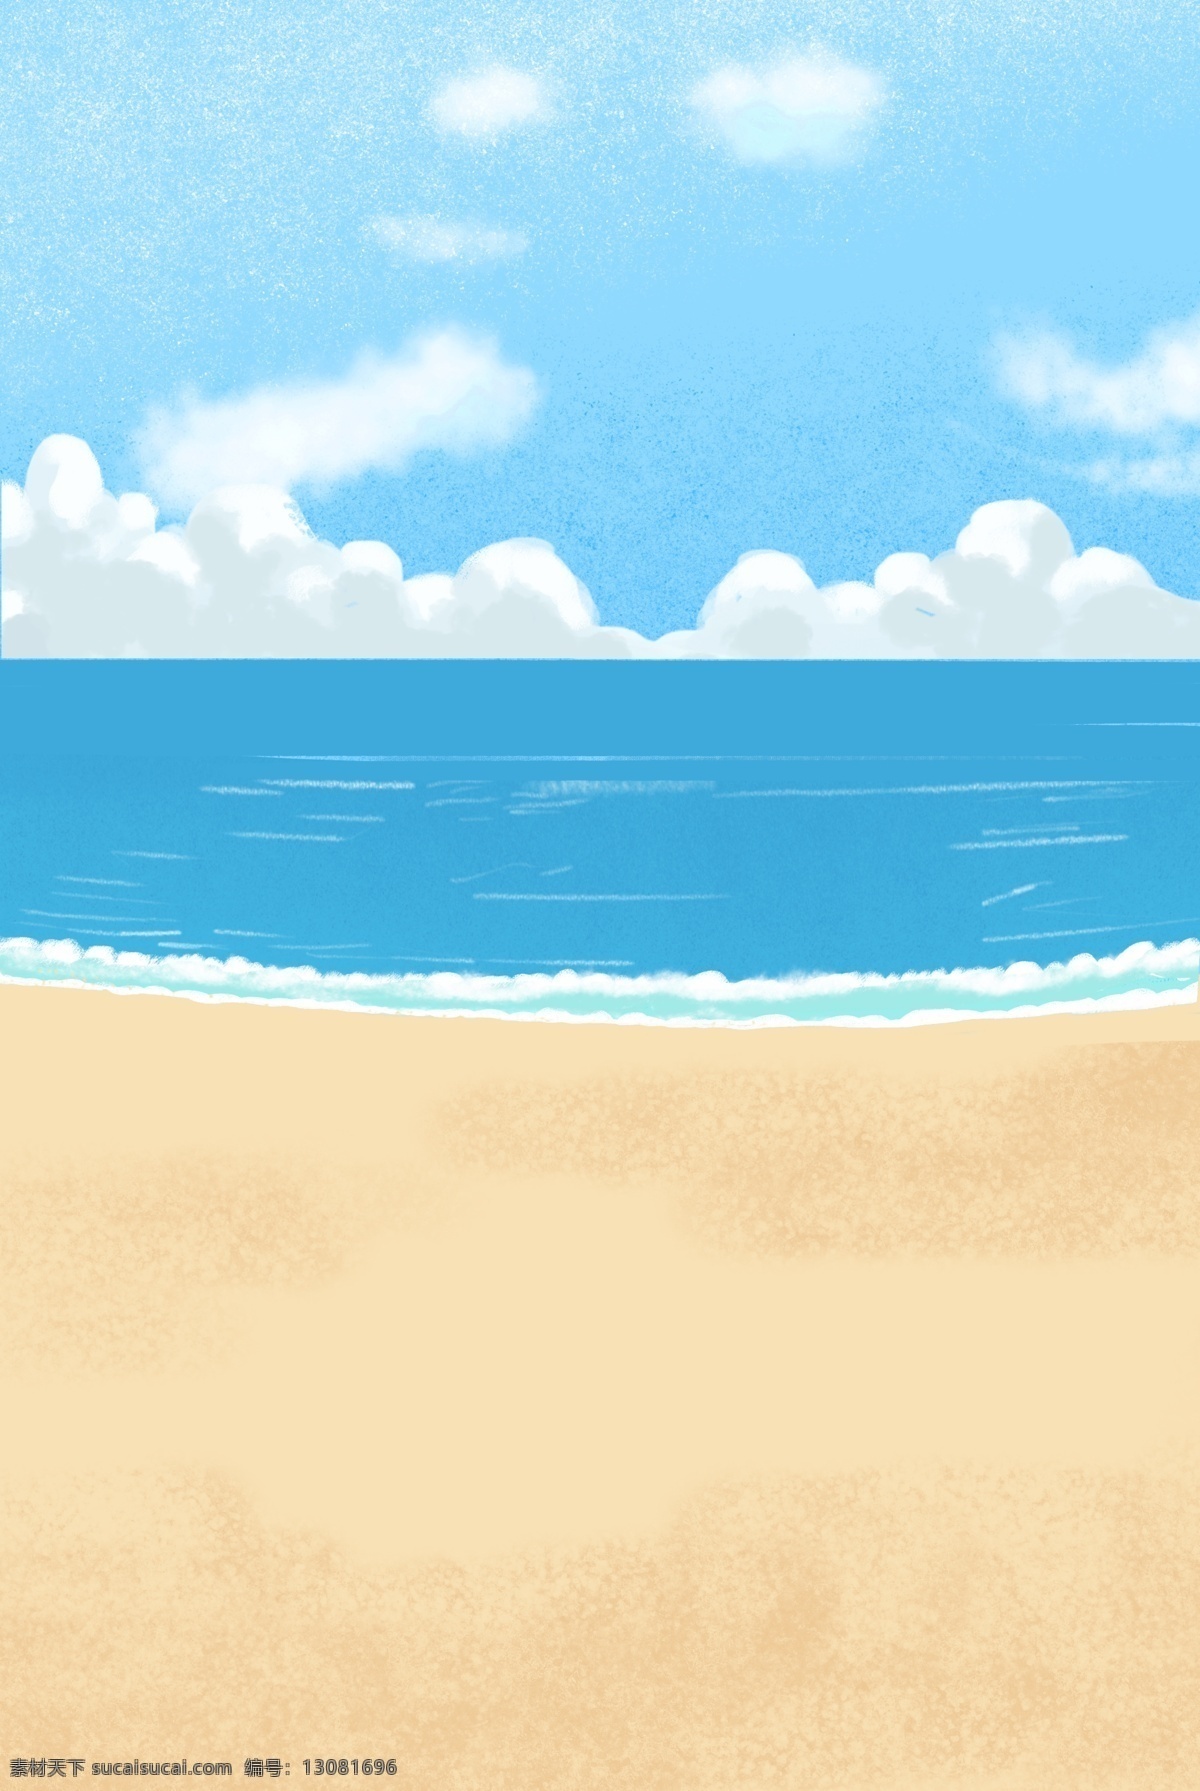 卡通 海洋 天空 背景 沙滩 云朵 水 背景图 卡通设计